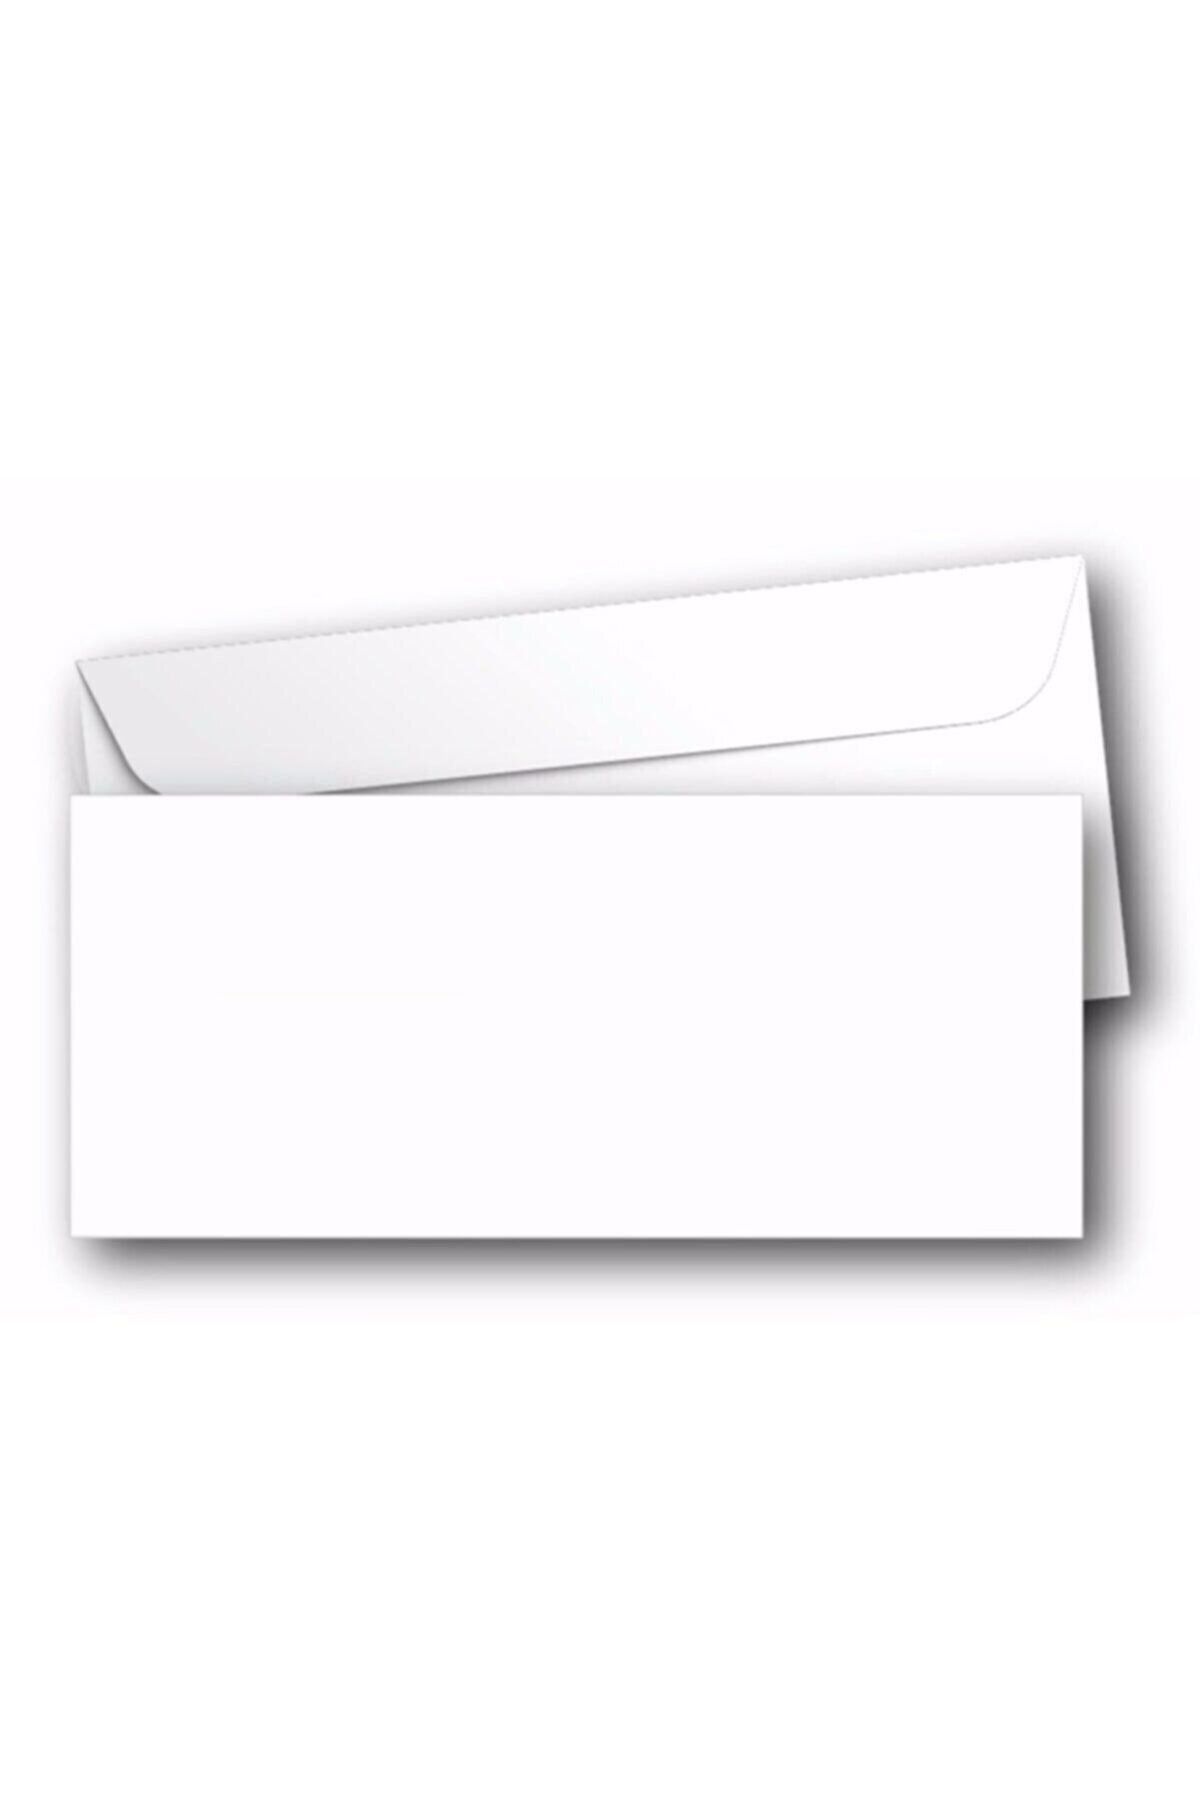 Diplomat Beyaz Zarf 50'li 105x240 - 110 Gr